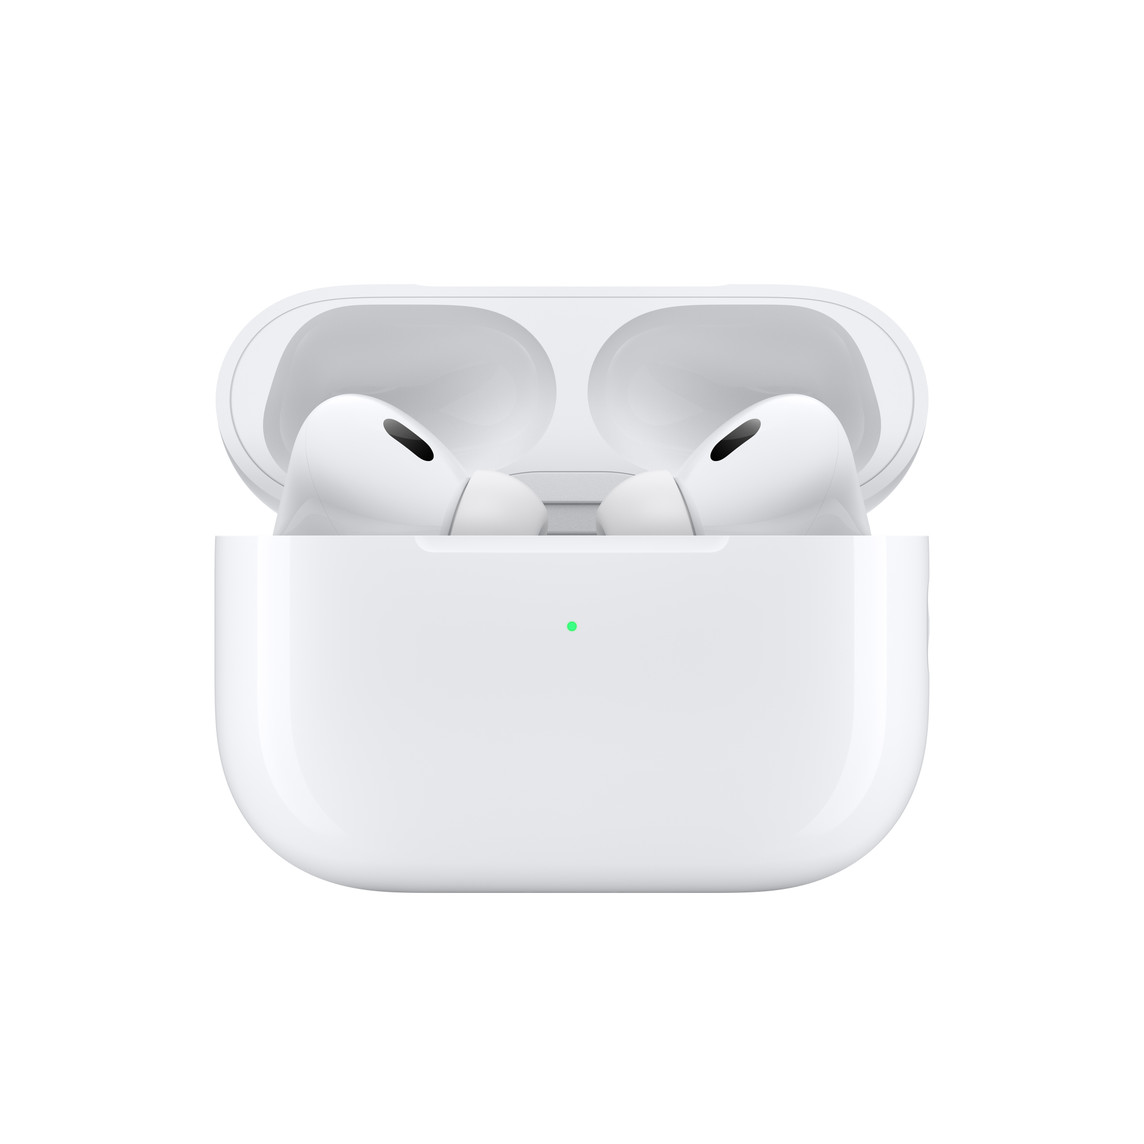 Apple AirPods Pro 2° Geração - Go Imports é confiável e tem preço justo